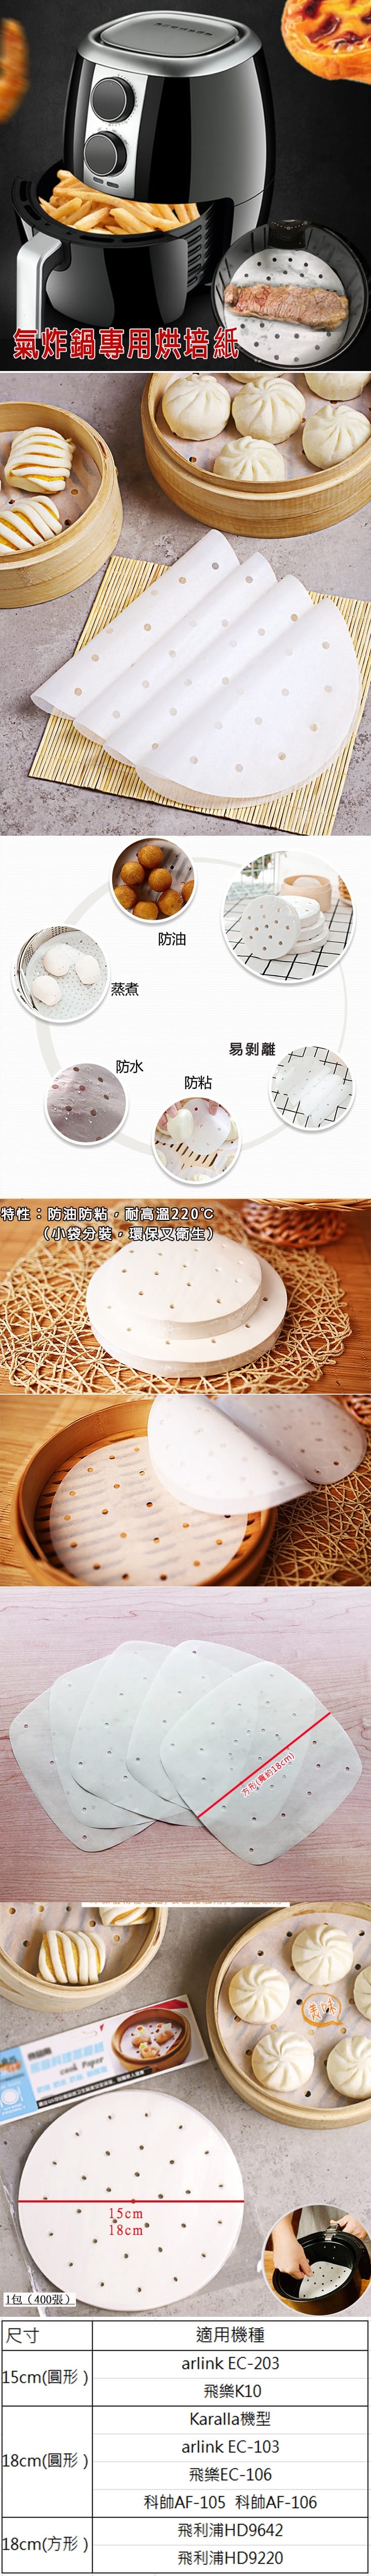 氣炸鍋方形/圓形烘培紙